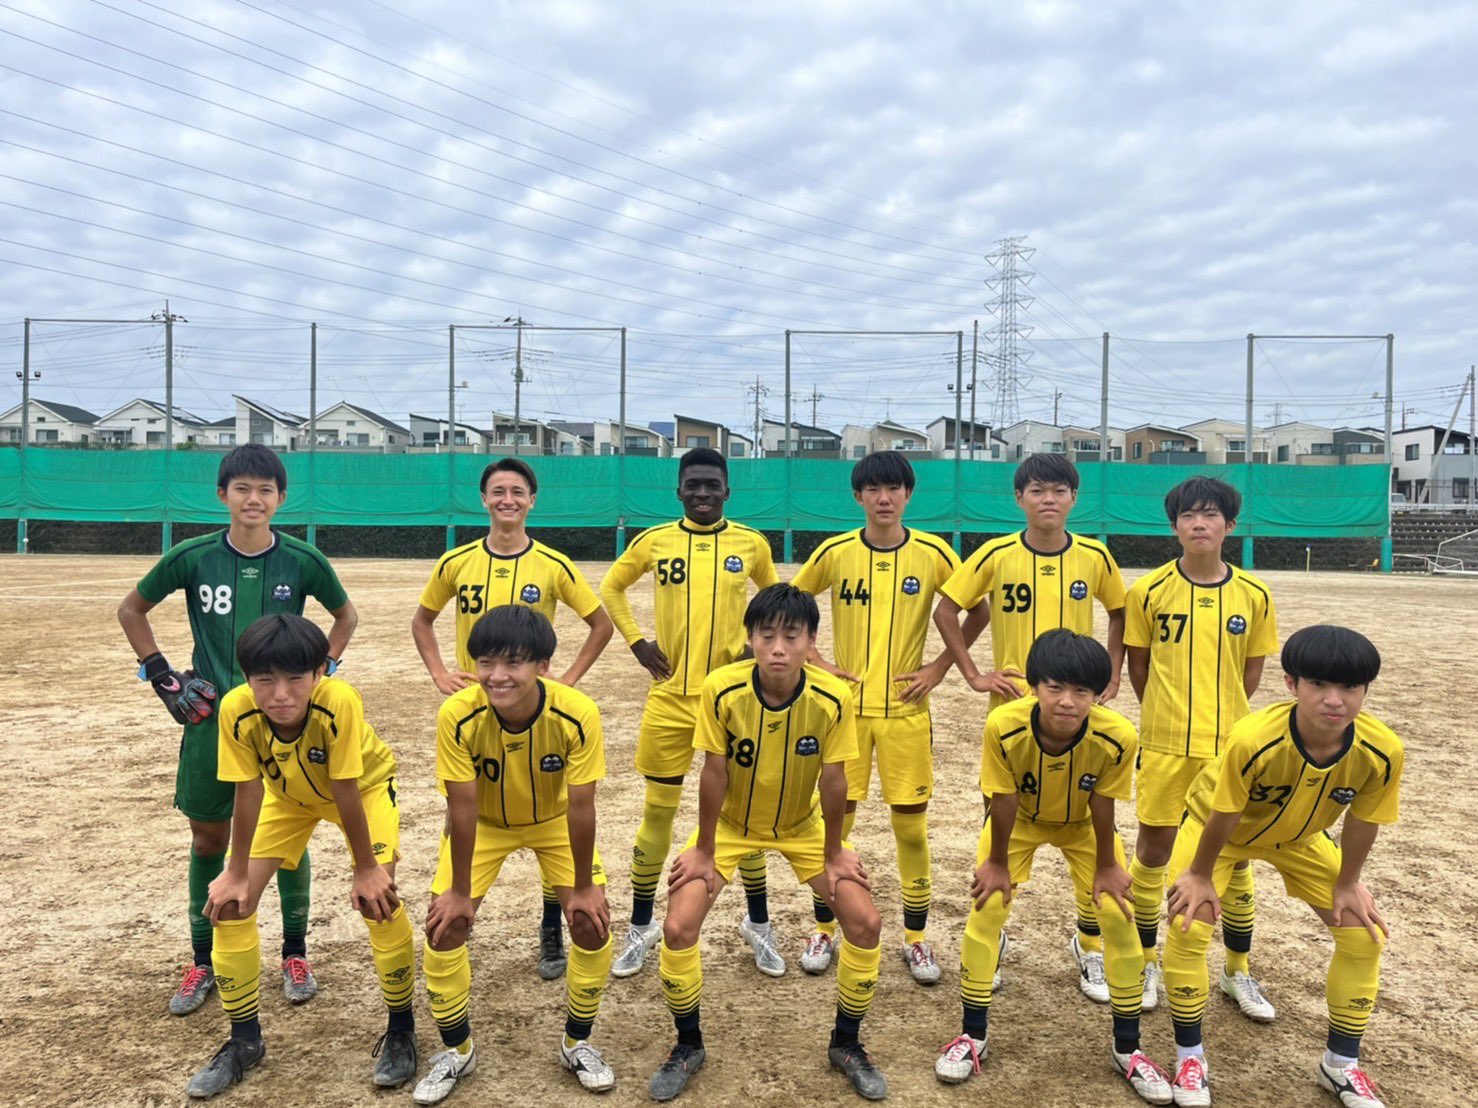 聖望学園高校サッカー部 公式 Seibofc Twitter